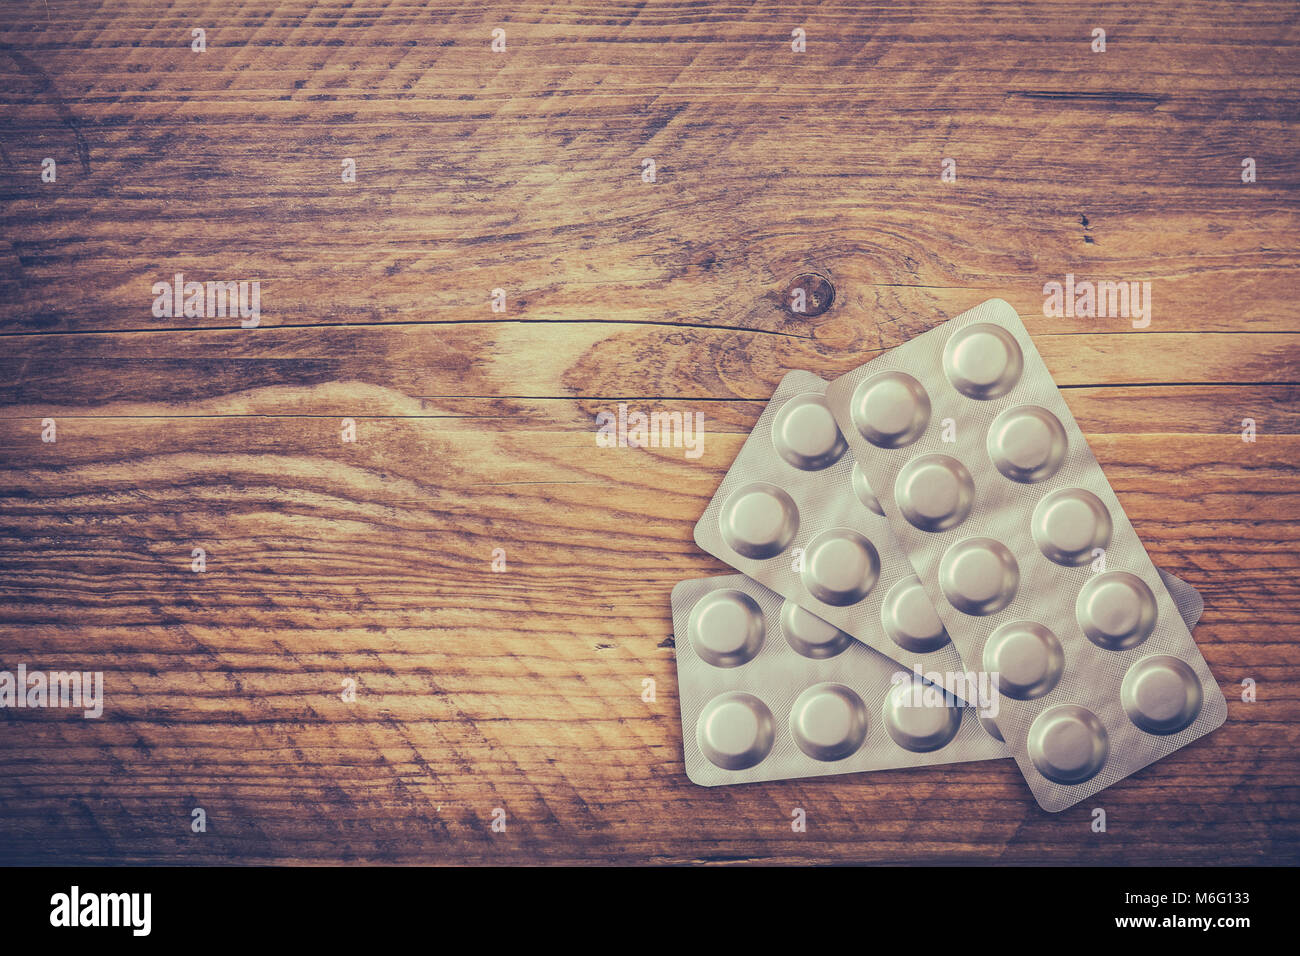 Immagine medica di un blister di farmaci su una tavola in legno rustico Foto Stock